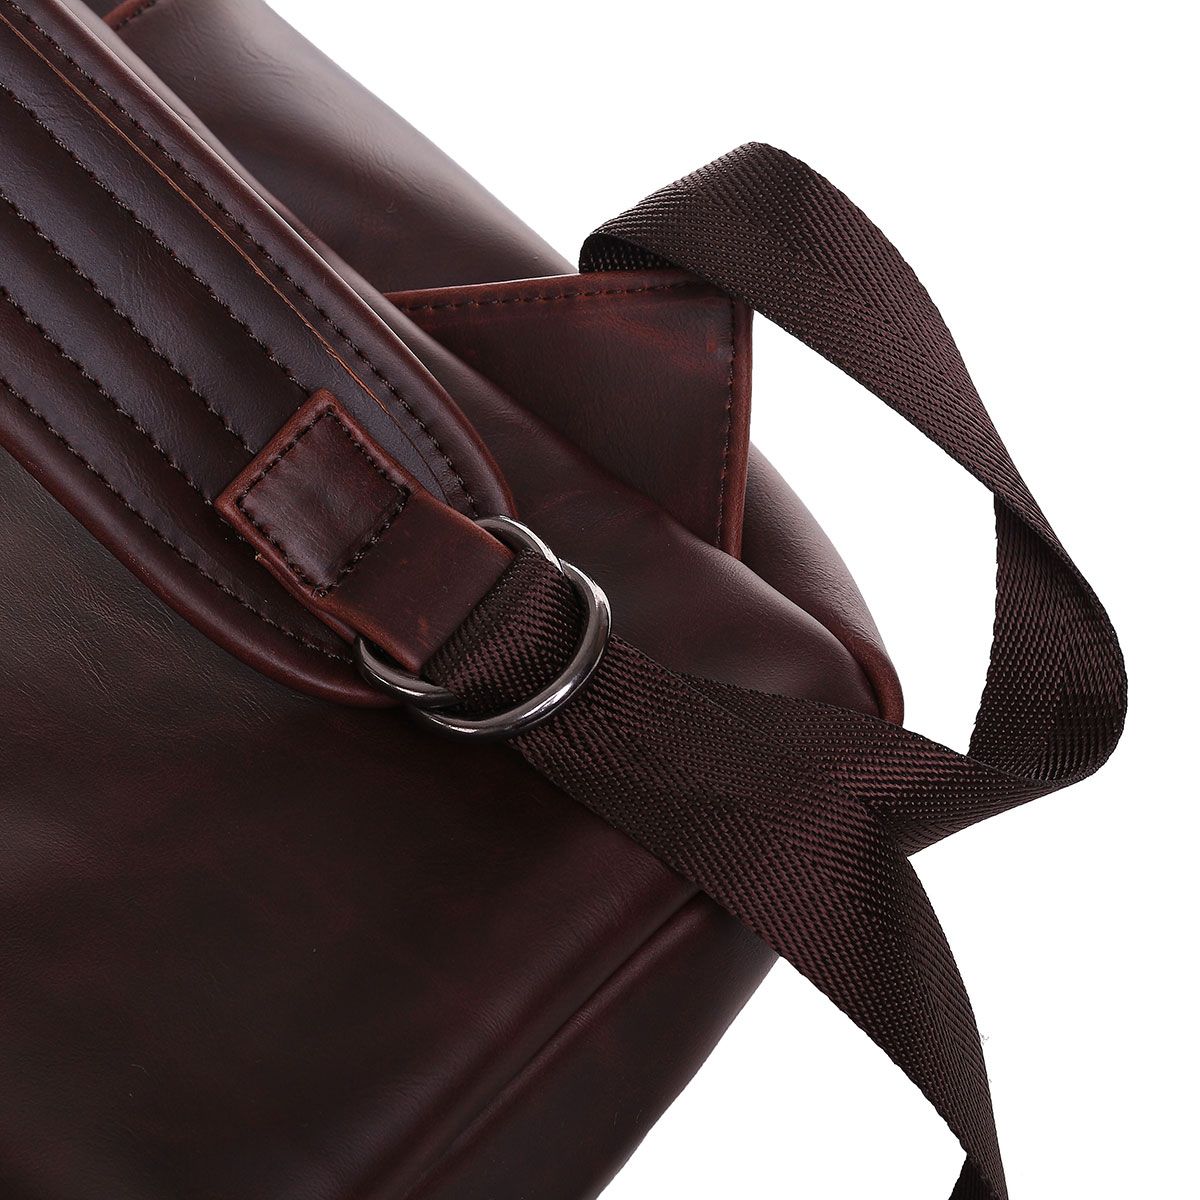 PU-Leather-Business-Backpack-Laptop-Bag-Retro-Mens-Bag-Schoolbag-Shoulders-Storage-Bag-Briefcase-for-1741848